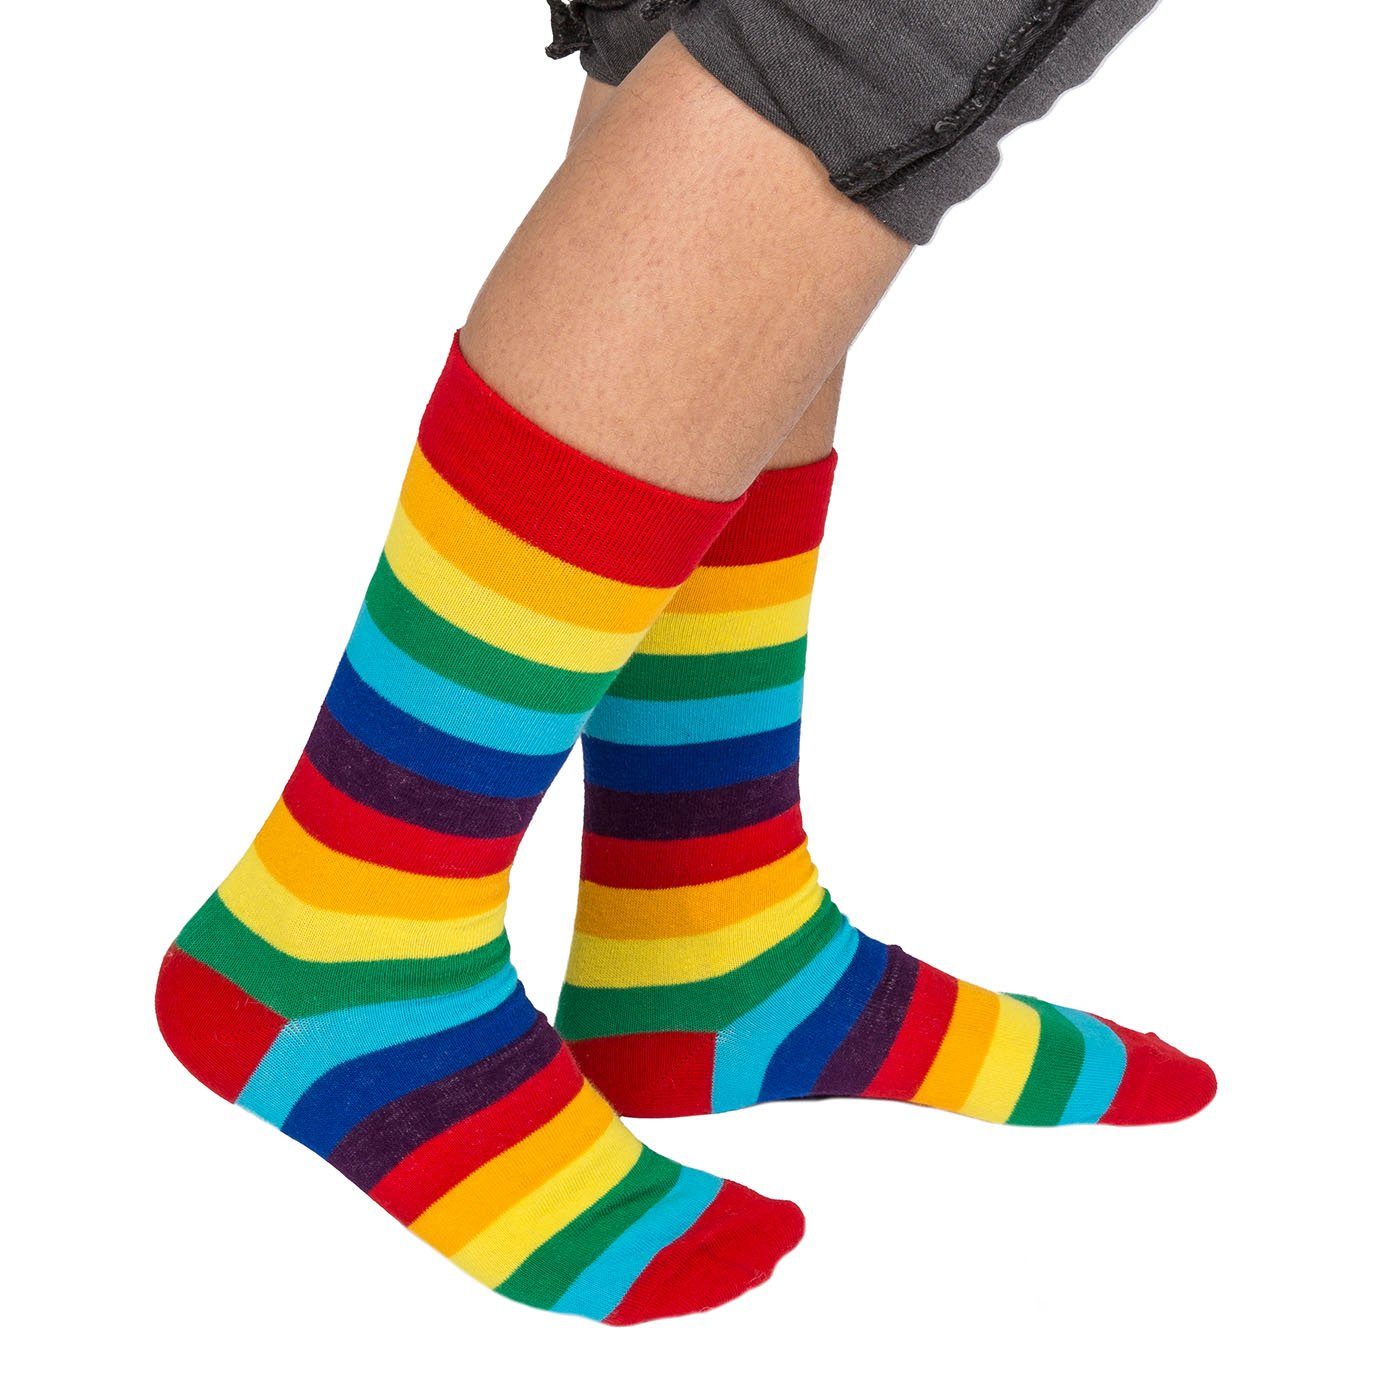 Socken in Pride, Metall-Dose Einheitsgröße Socken, ReWu